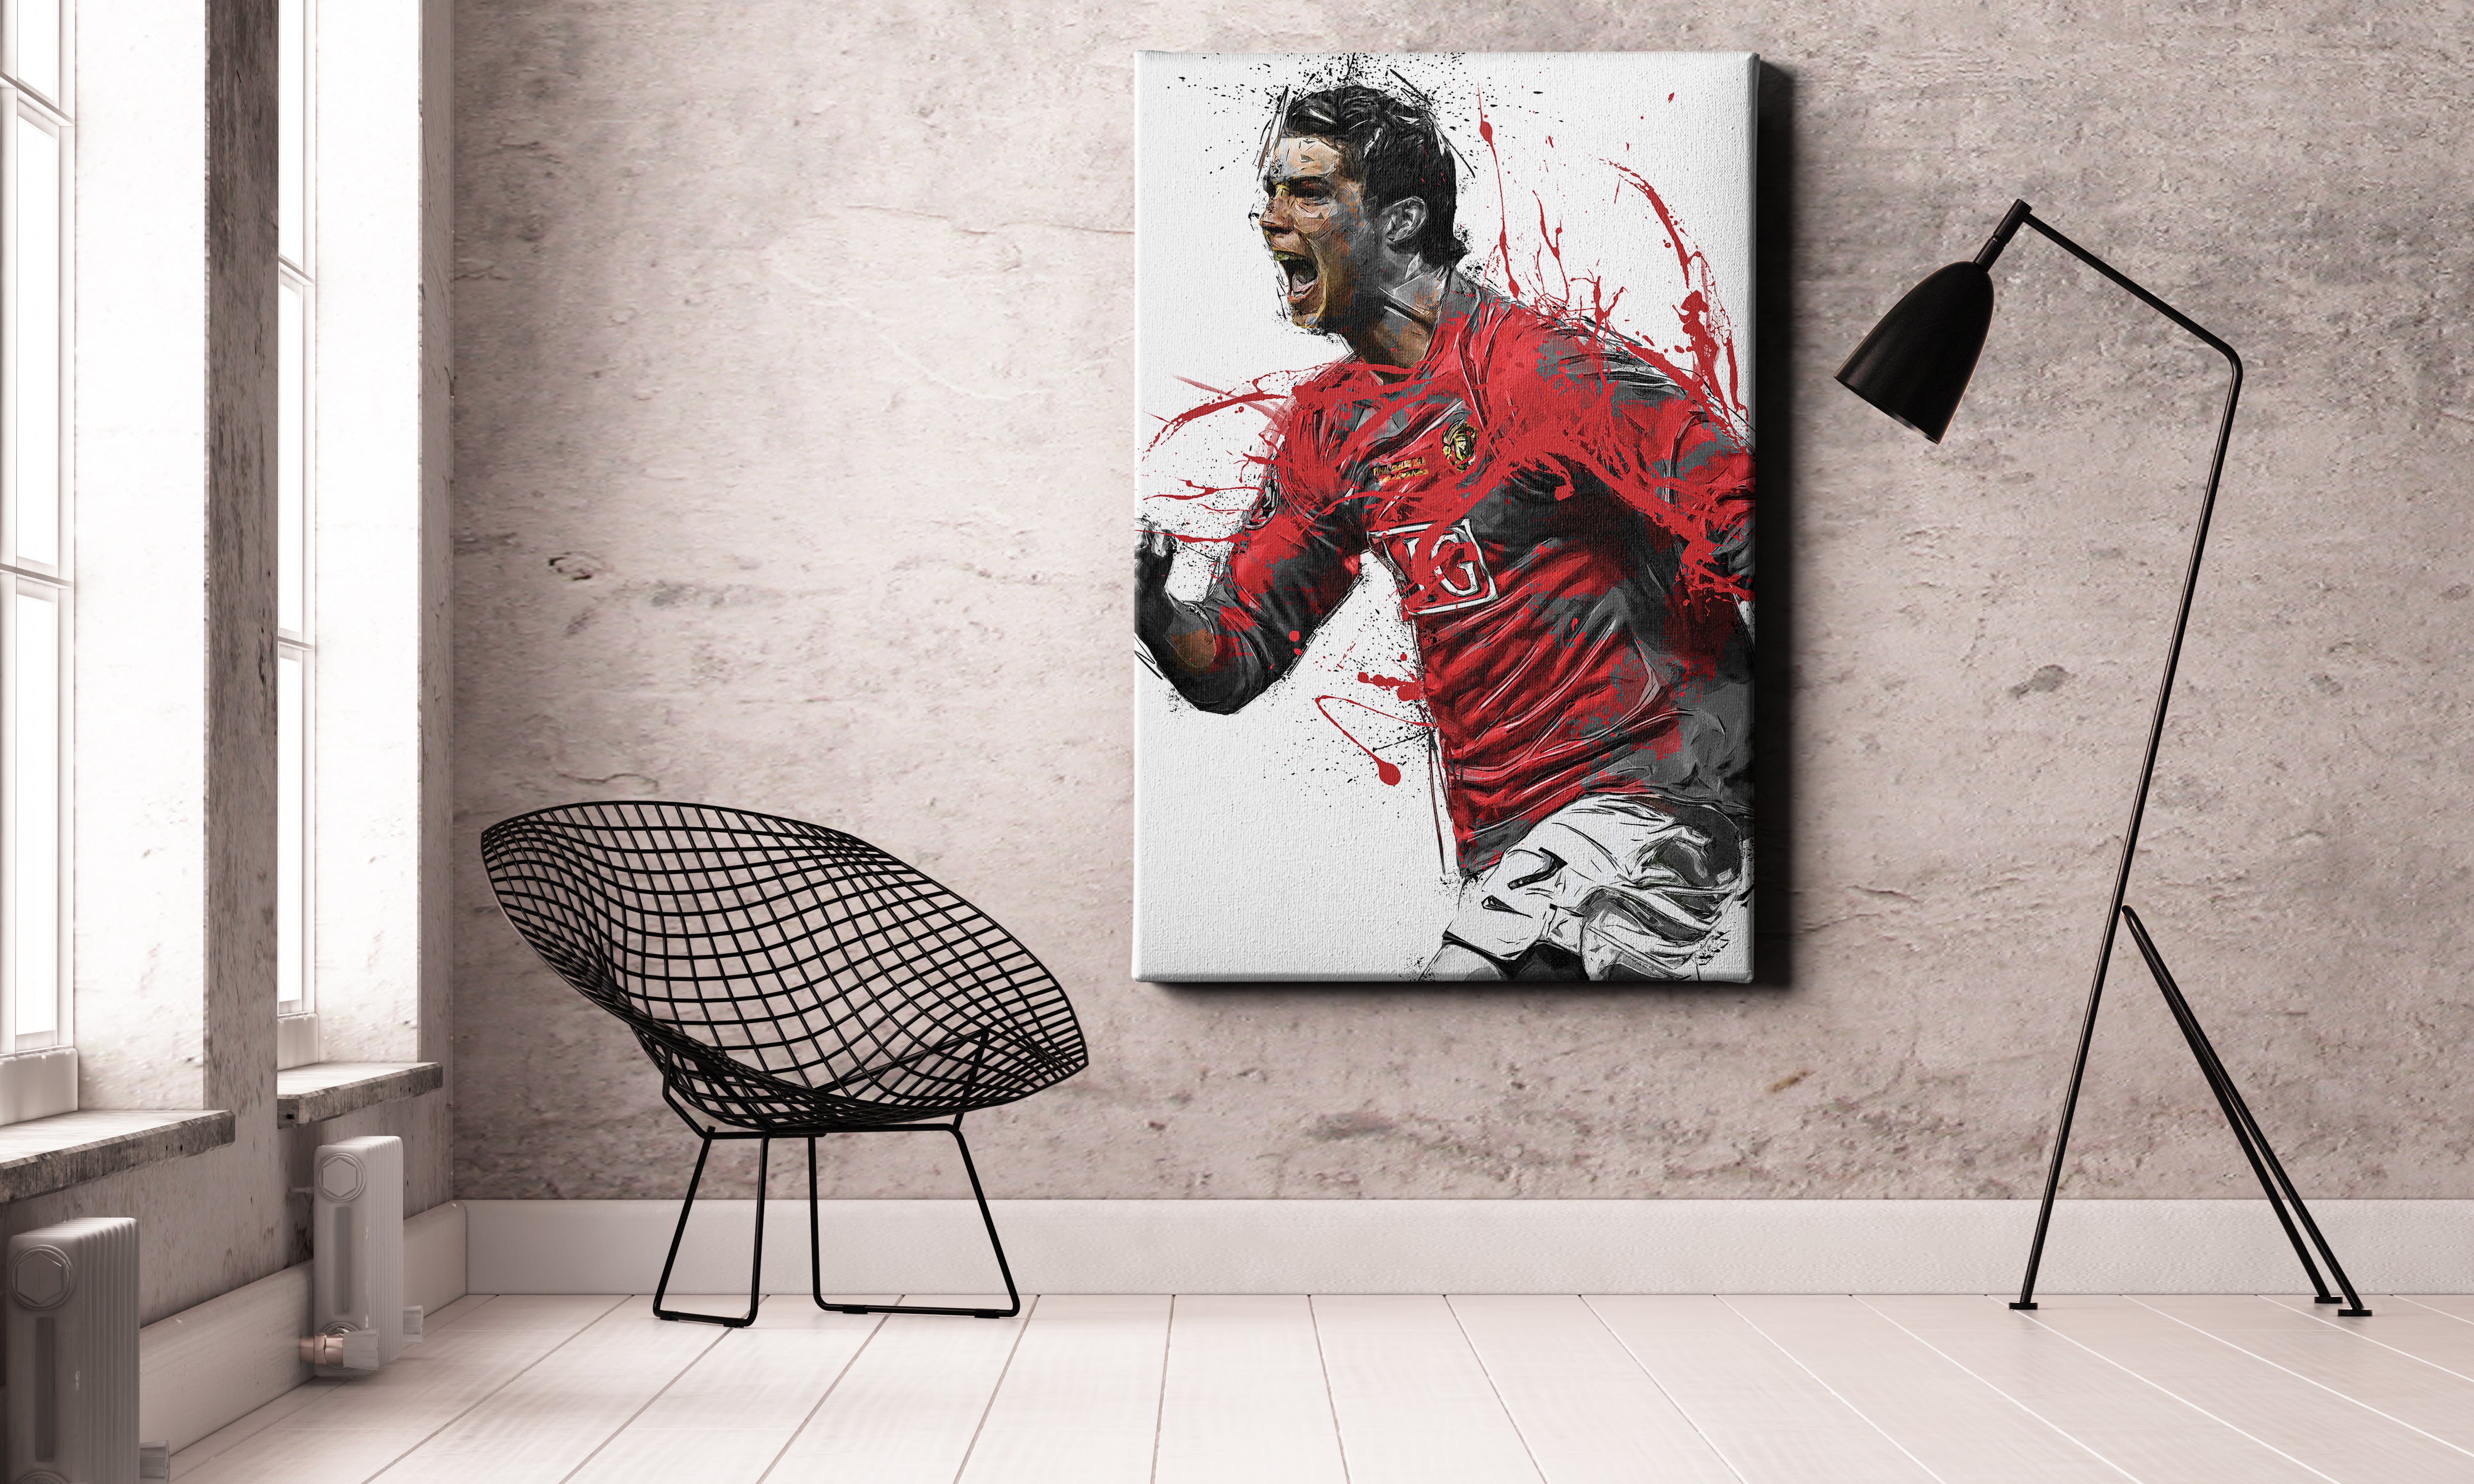 Soccer Poster, Cristiano Ronaldo Poster, Portugal